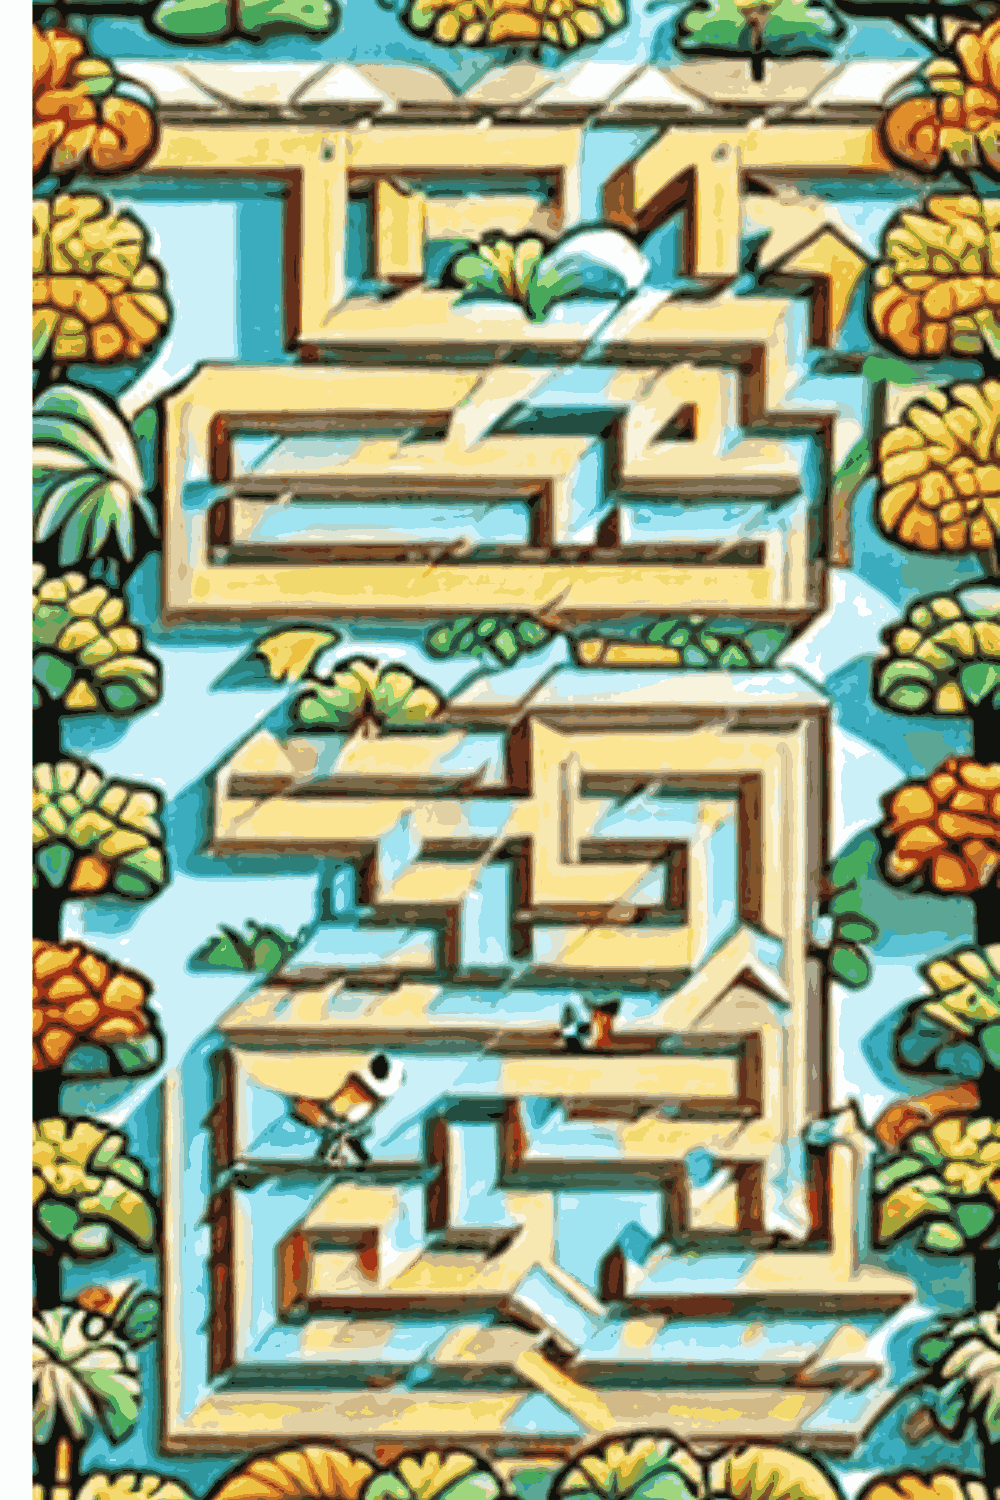 Amazon KDP Maze Puzzle Book pinterest preview image.